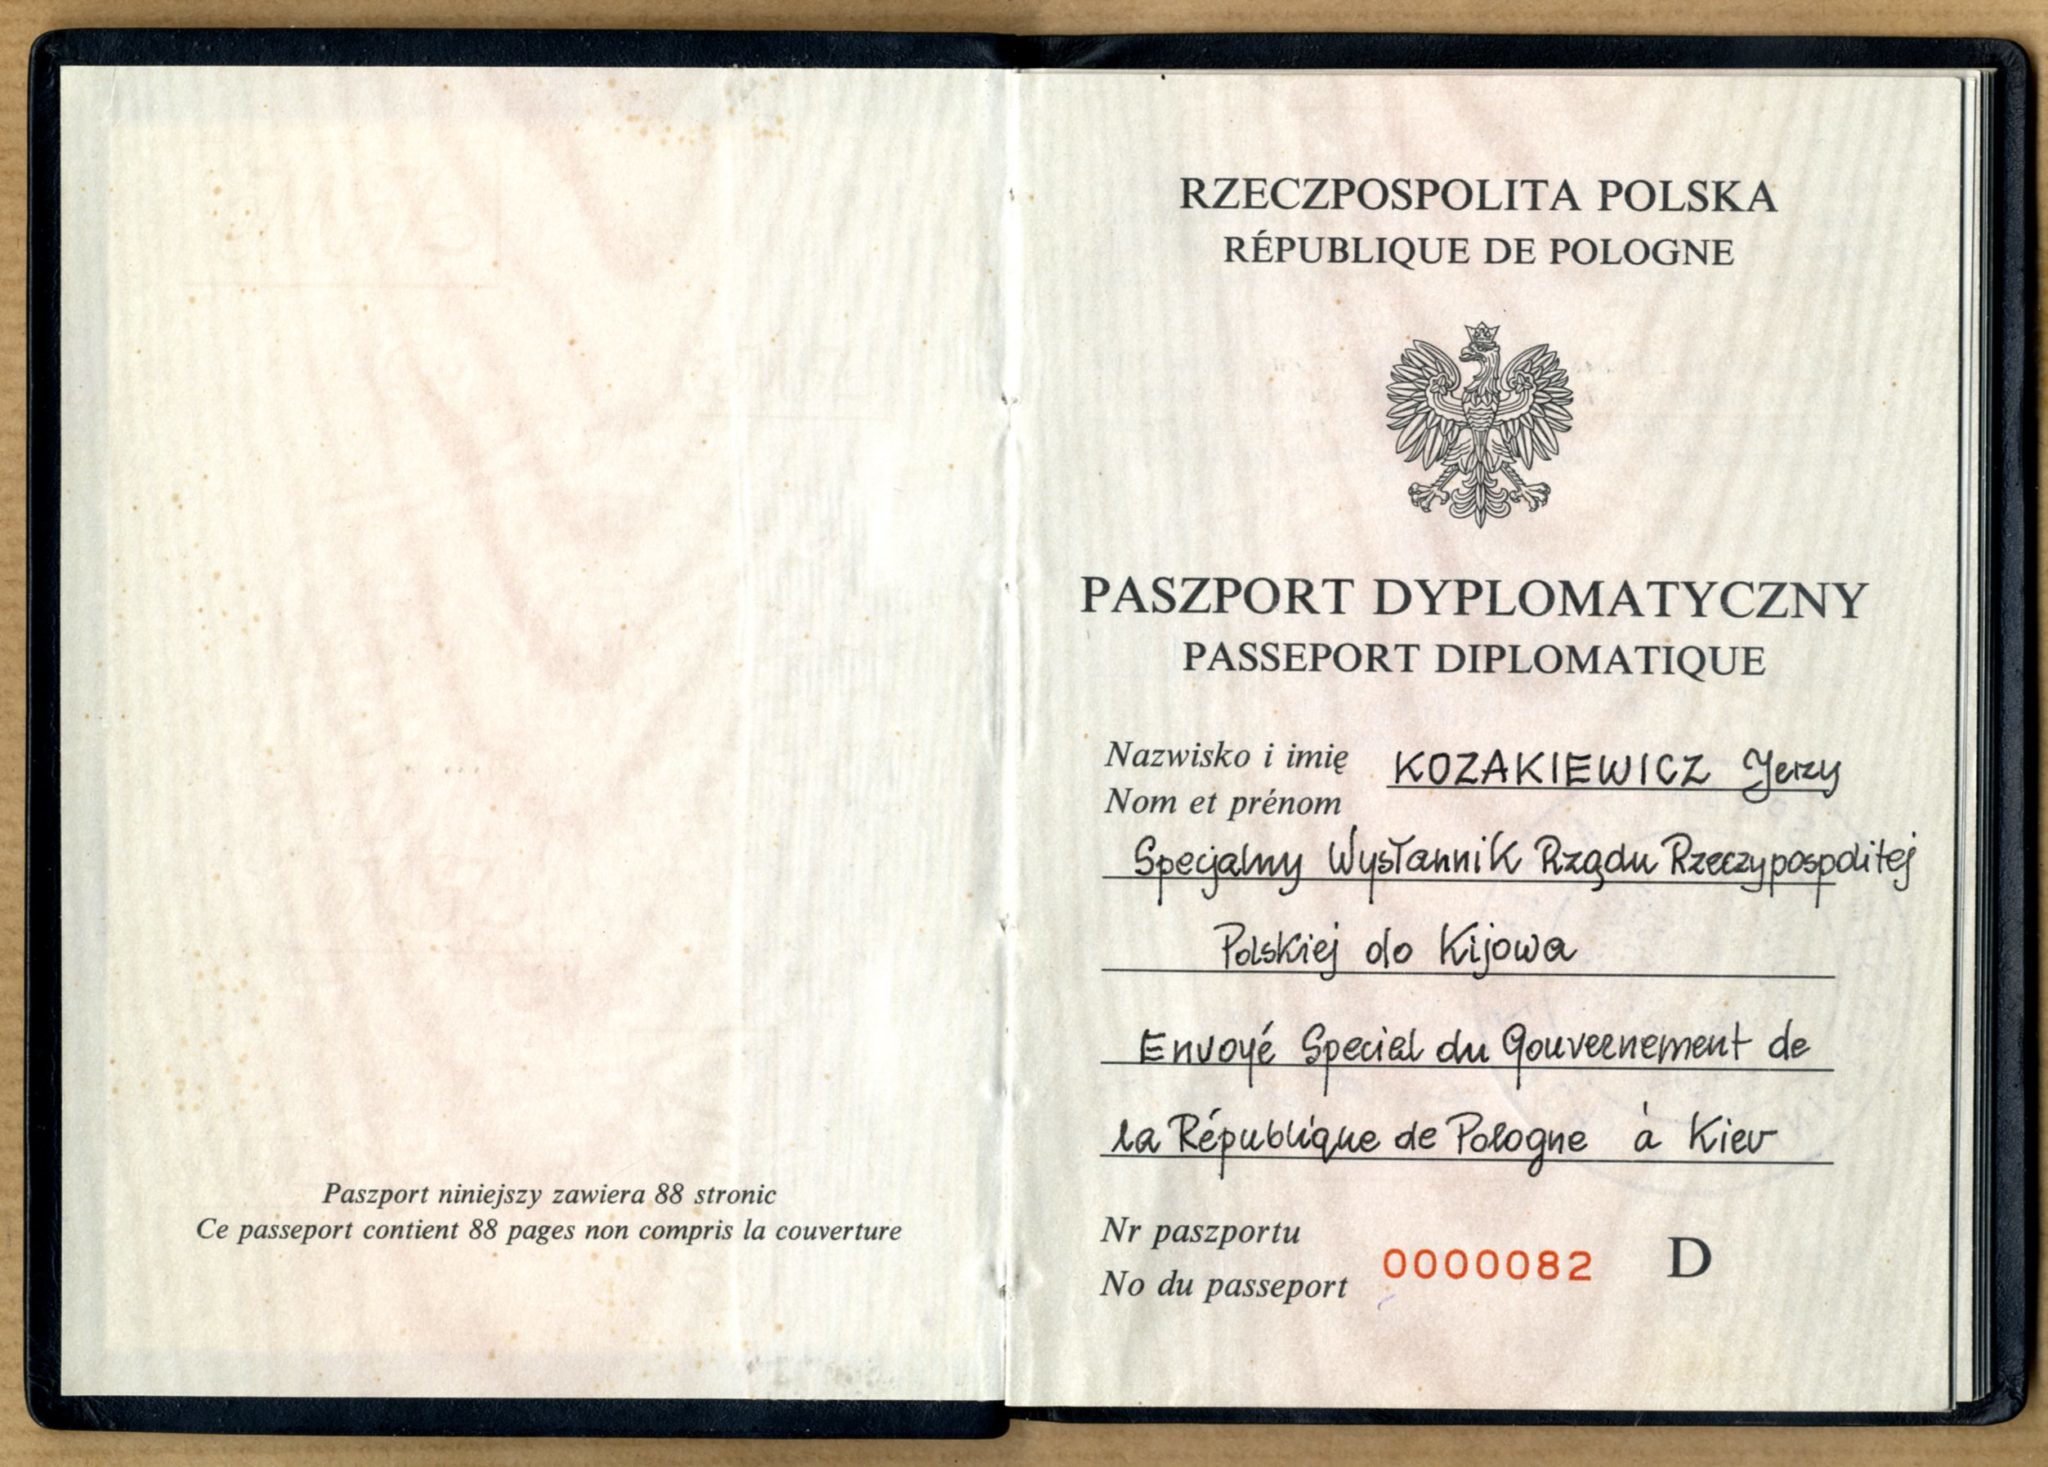 Дипломатичний паспорт Спеціального Посланника Уряду Республіки Польща у Києві Єжи Козакевича, 11 жовтня 1991 